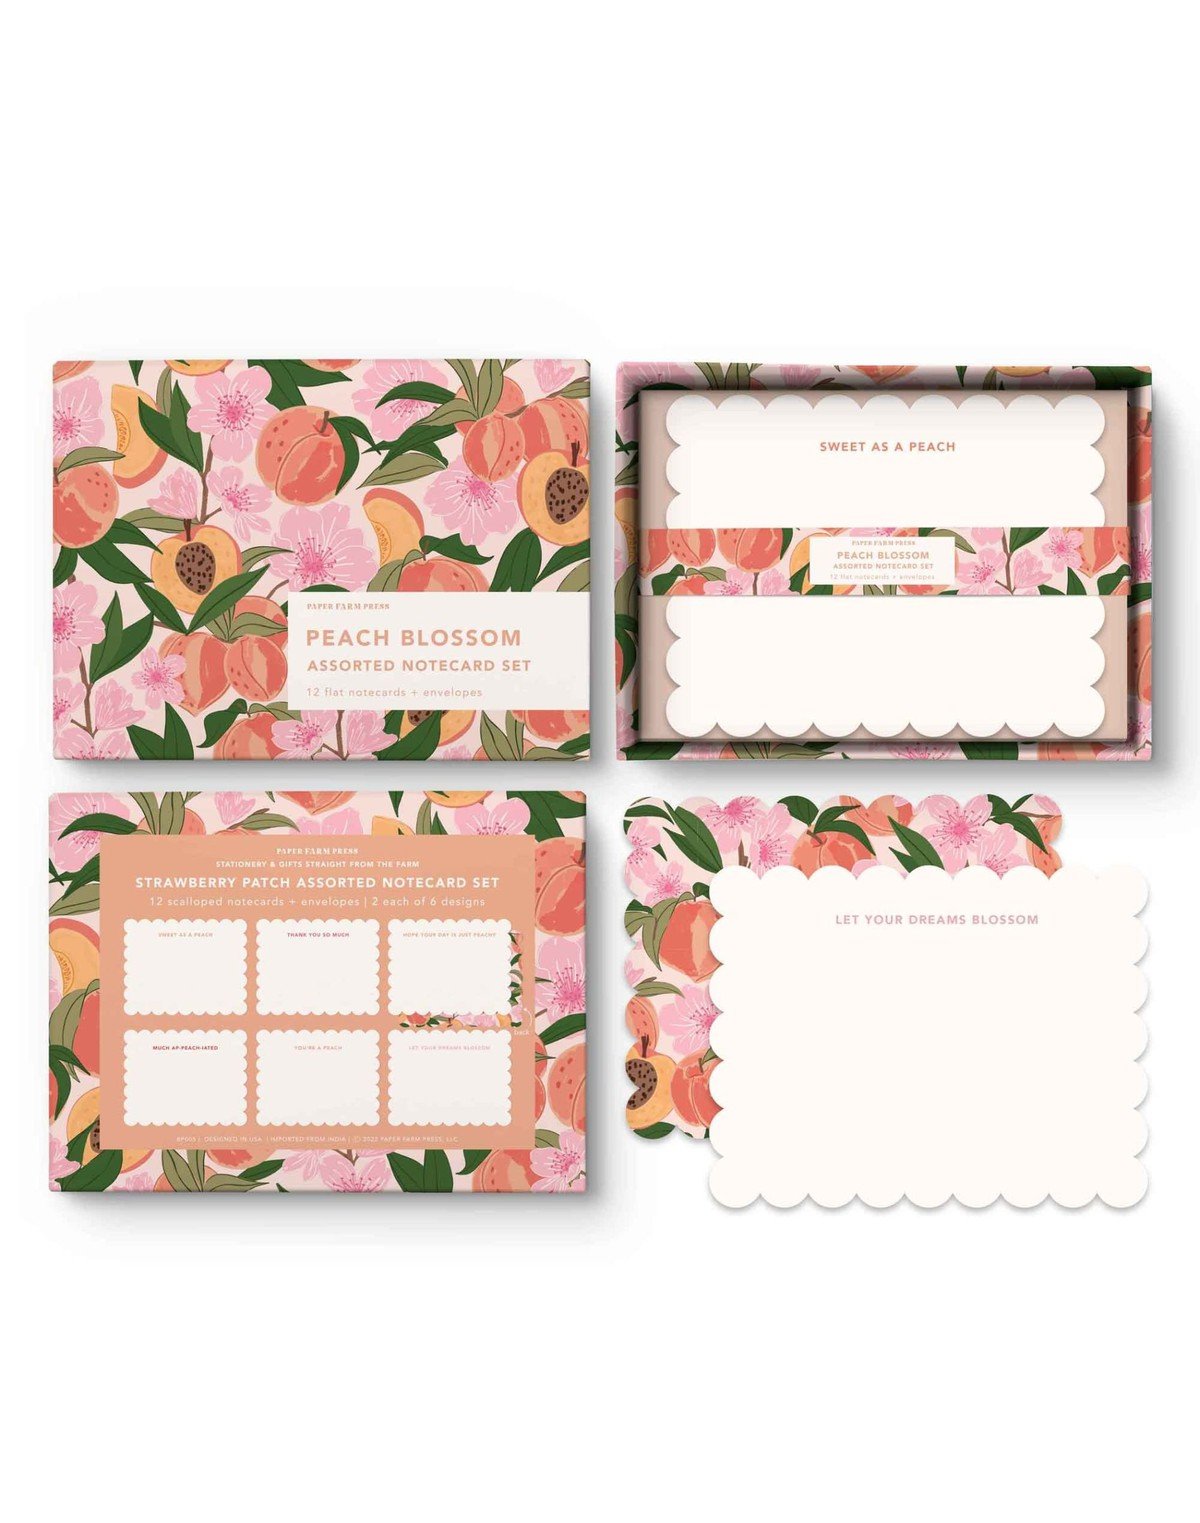 Peach Blossom Assorted Notecard Set item